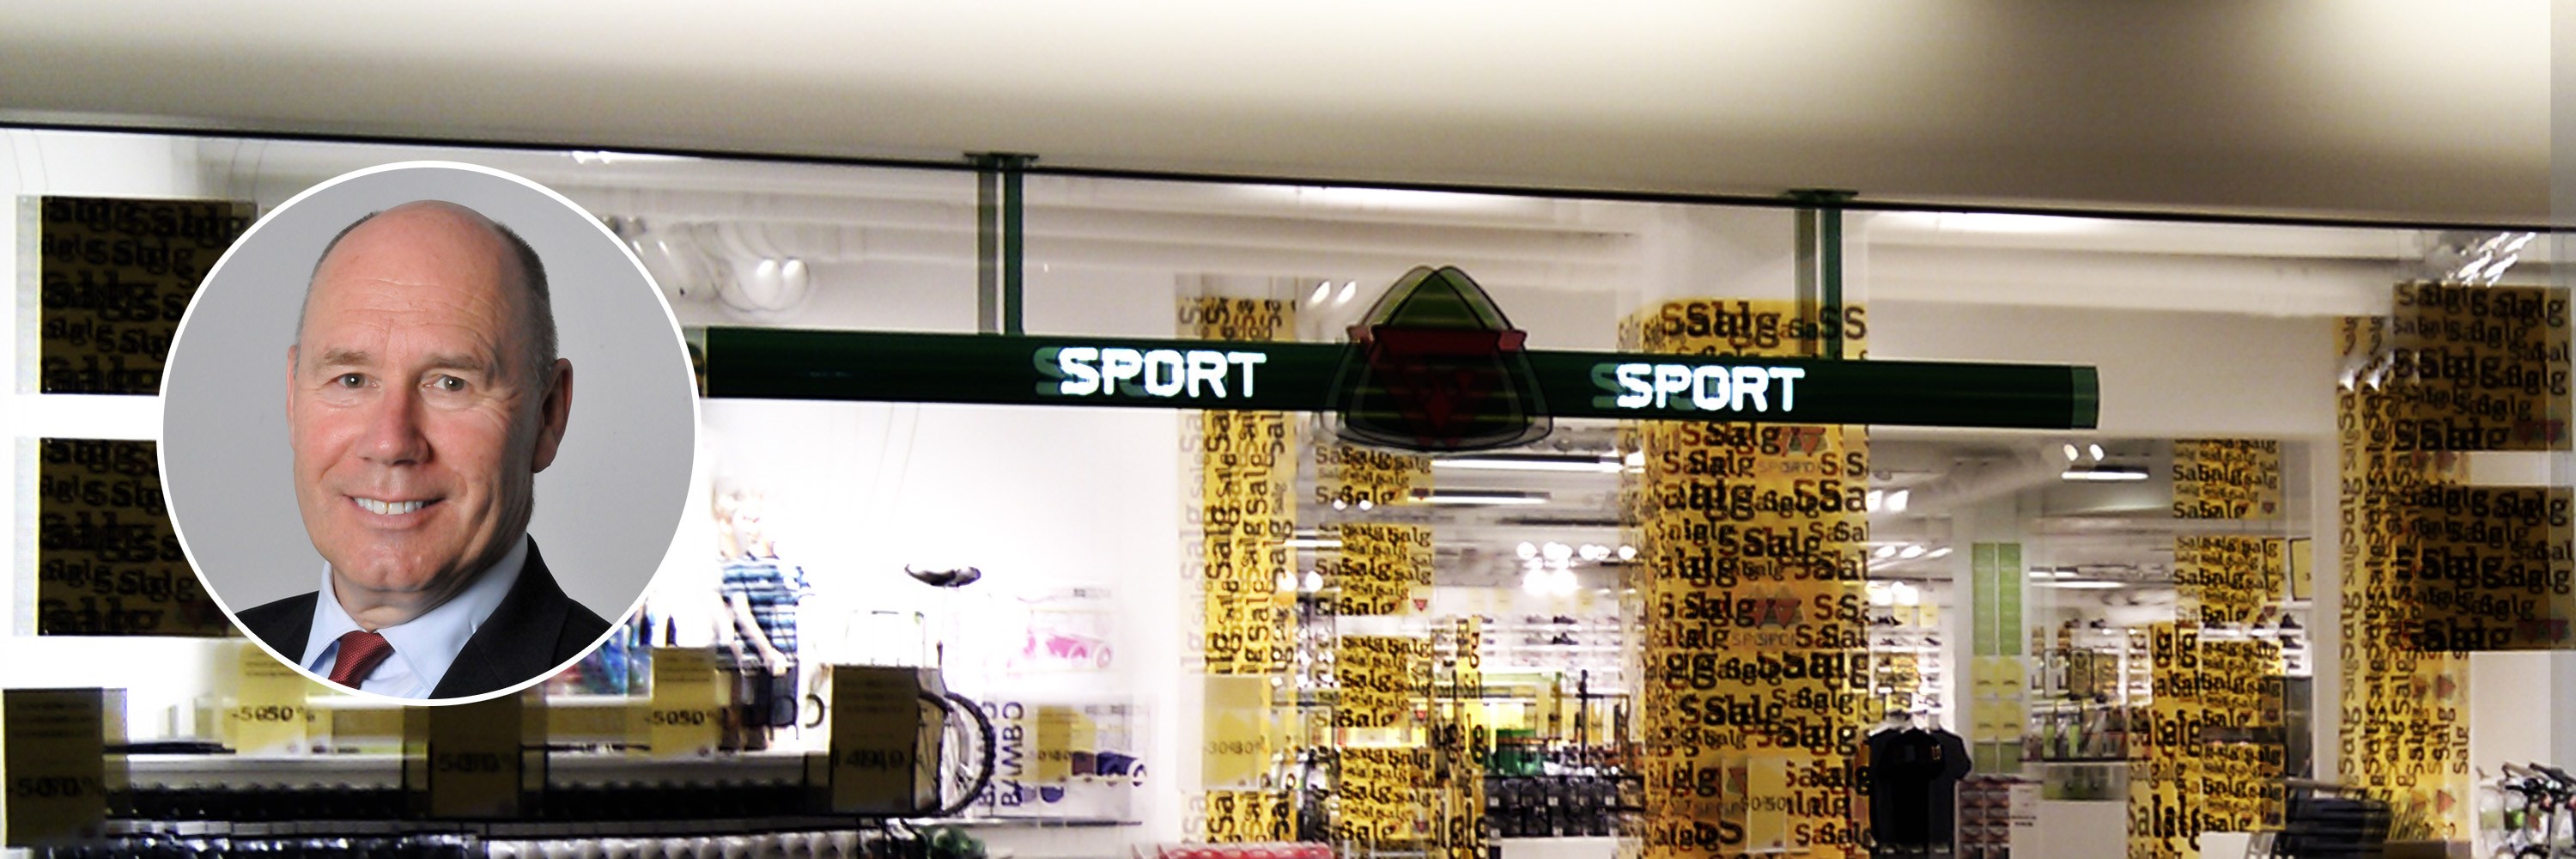 G-sport butikk foto: NHH og Wikipedia